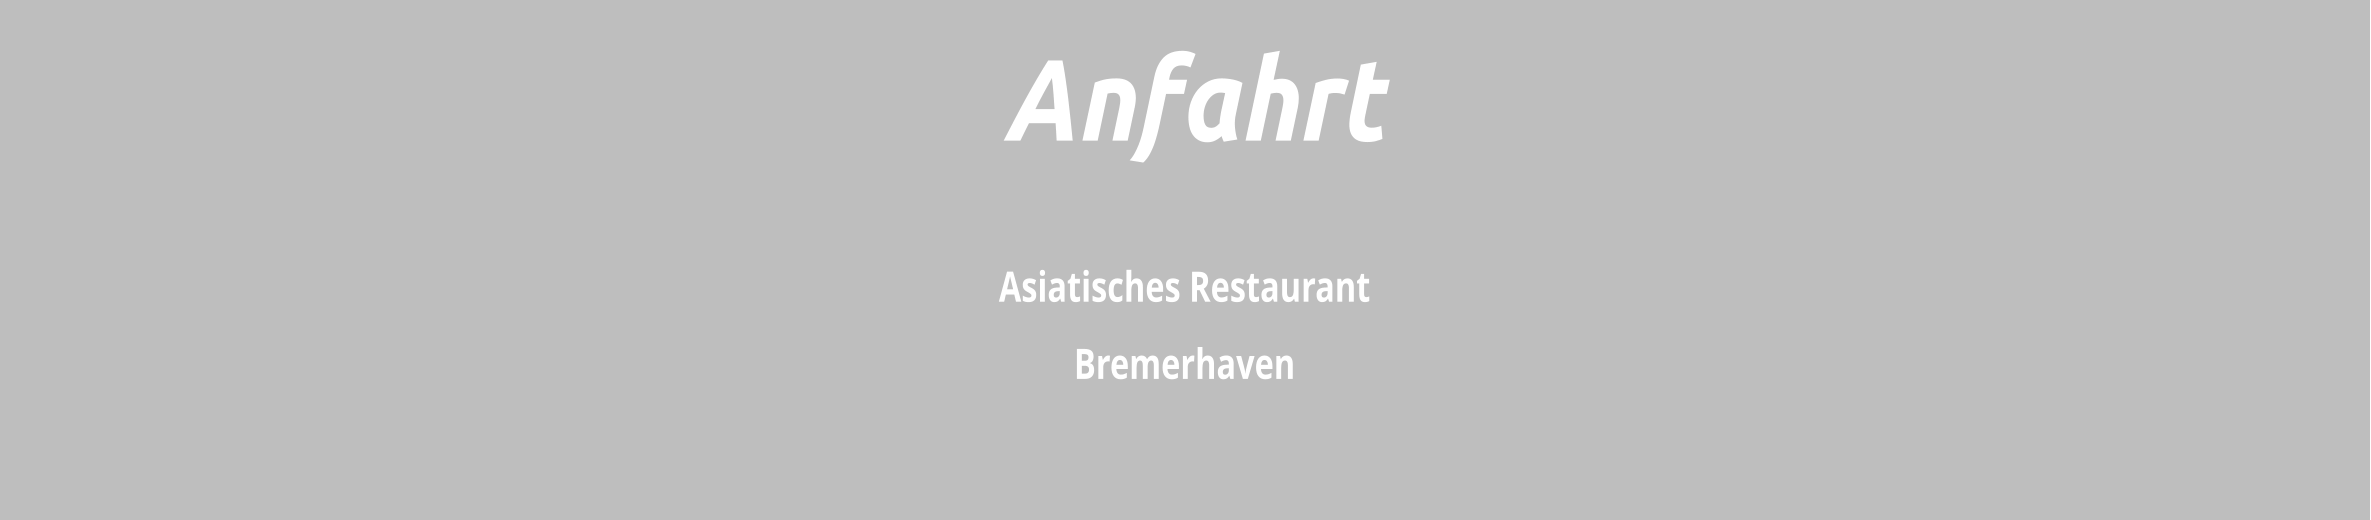 Asiatisches Restaurant  Bremerhaven  Anfahrt